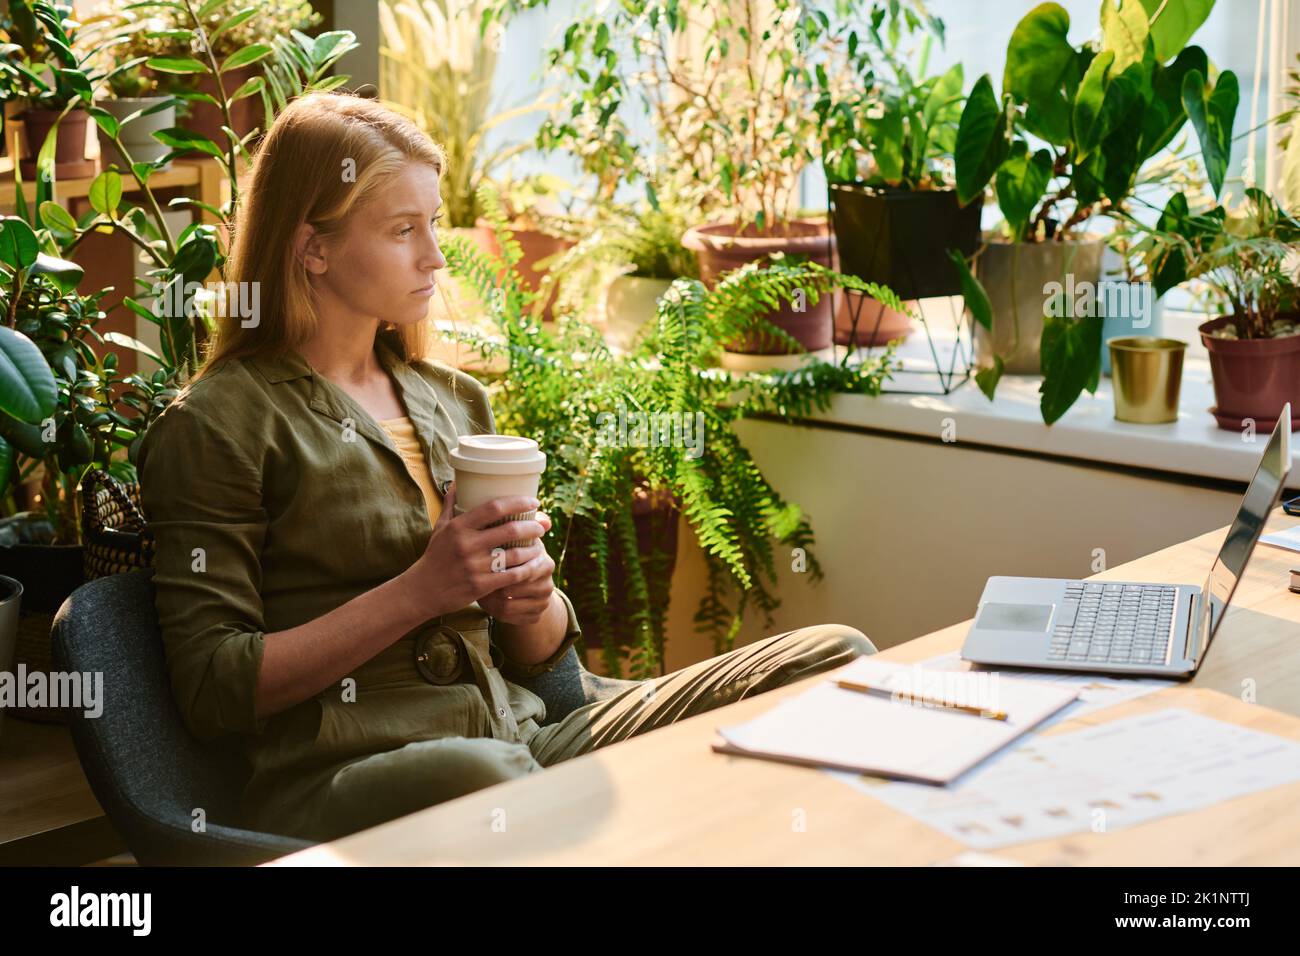 Mujer joven rubia con una taza de café mirando la pantalla del portátil durante la conexión en red o mientras ve un vídeo en línea o se comunica Foto de stock